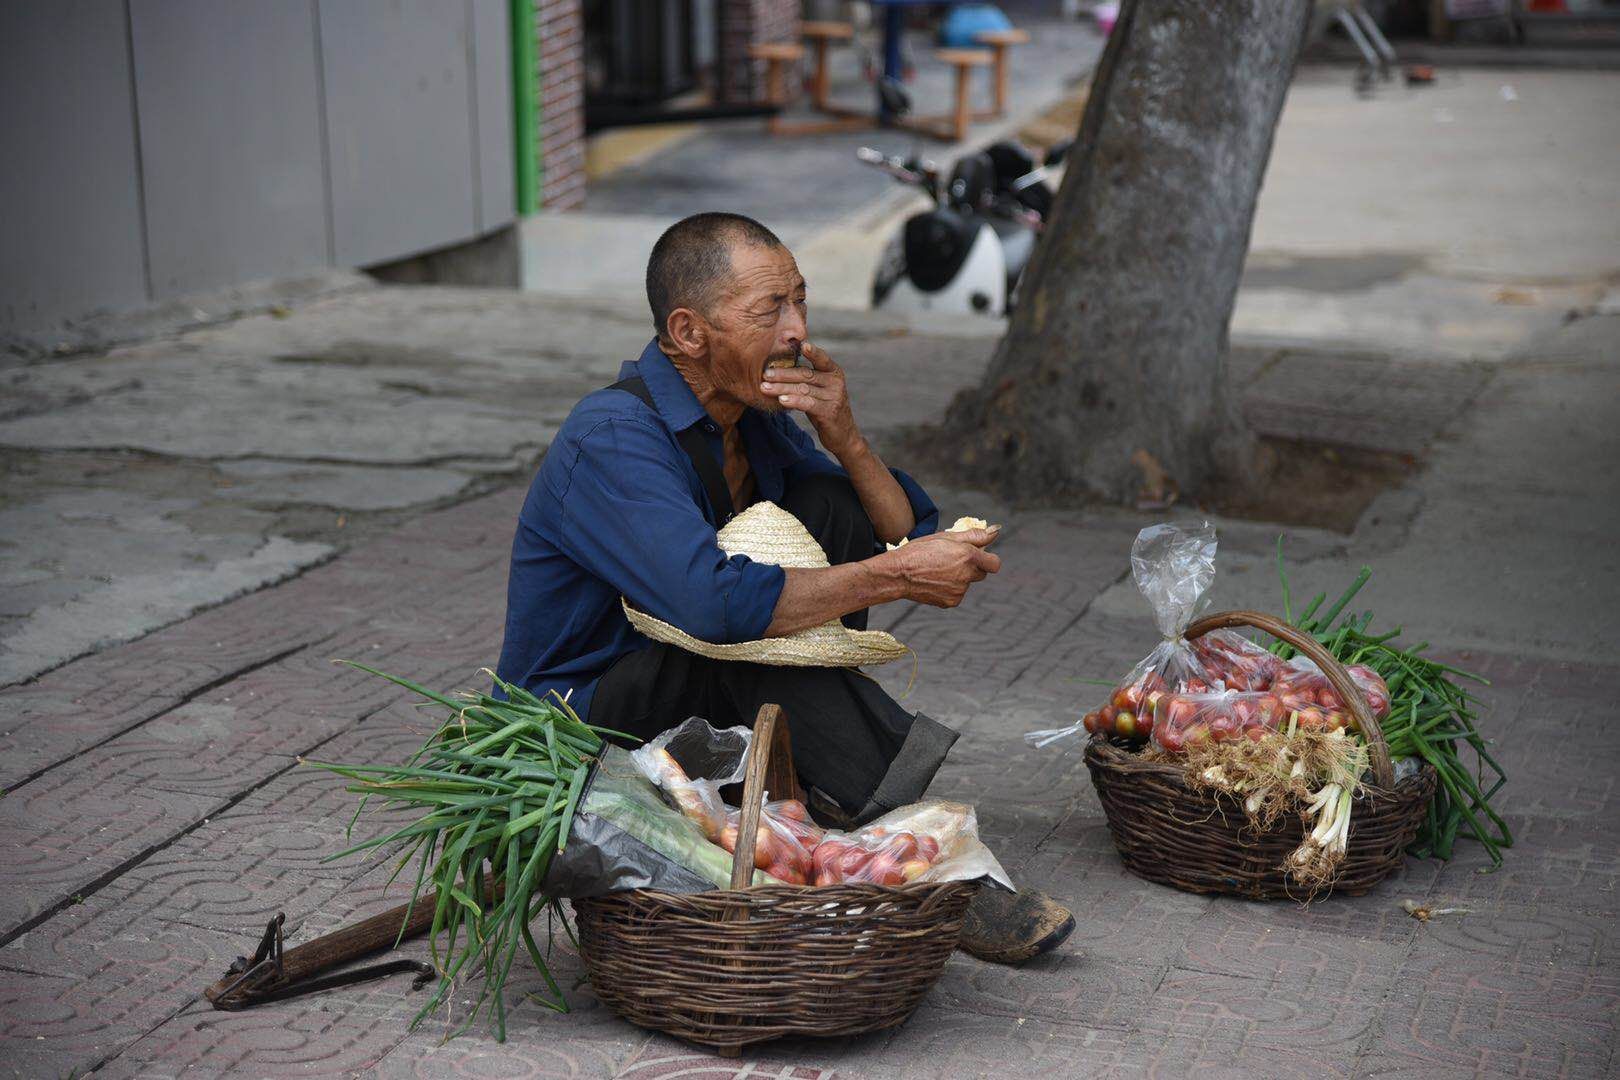 一根扁担,两只竹篮,这位在街头卖菜的老人,正在等待顾客